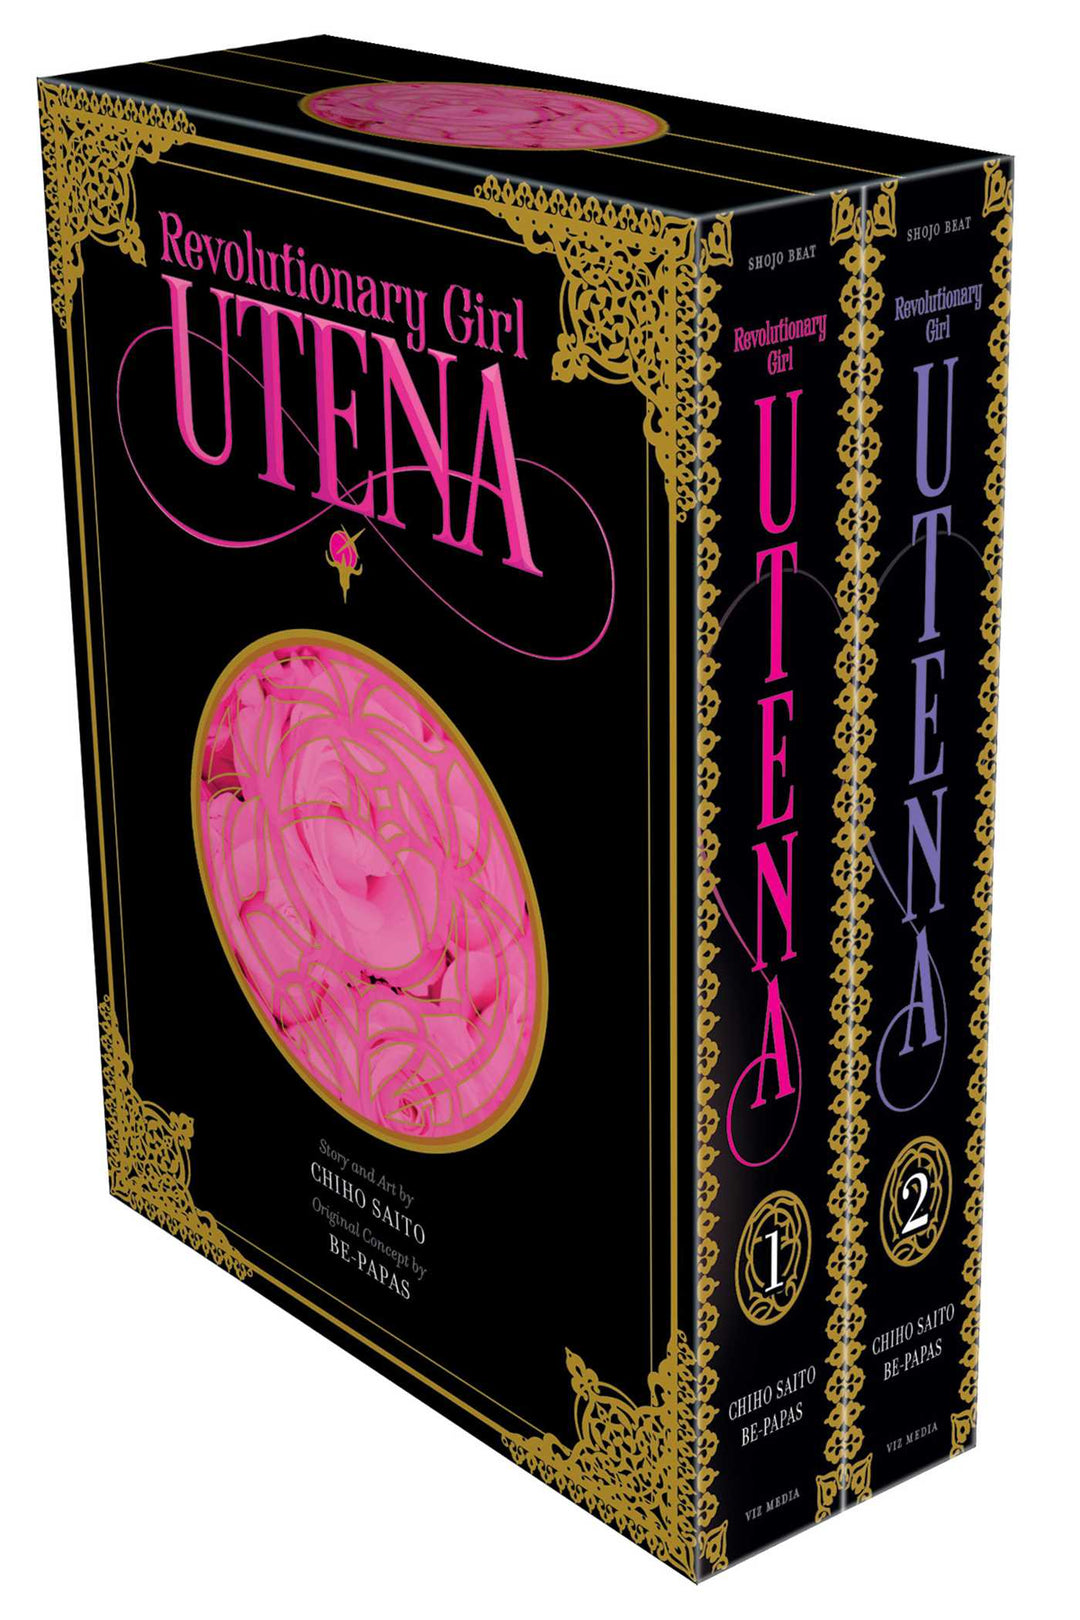 Revolutionary Girl Utena Deluxe Box Set - Manga Mate